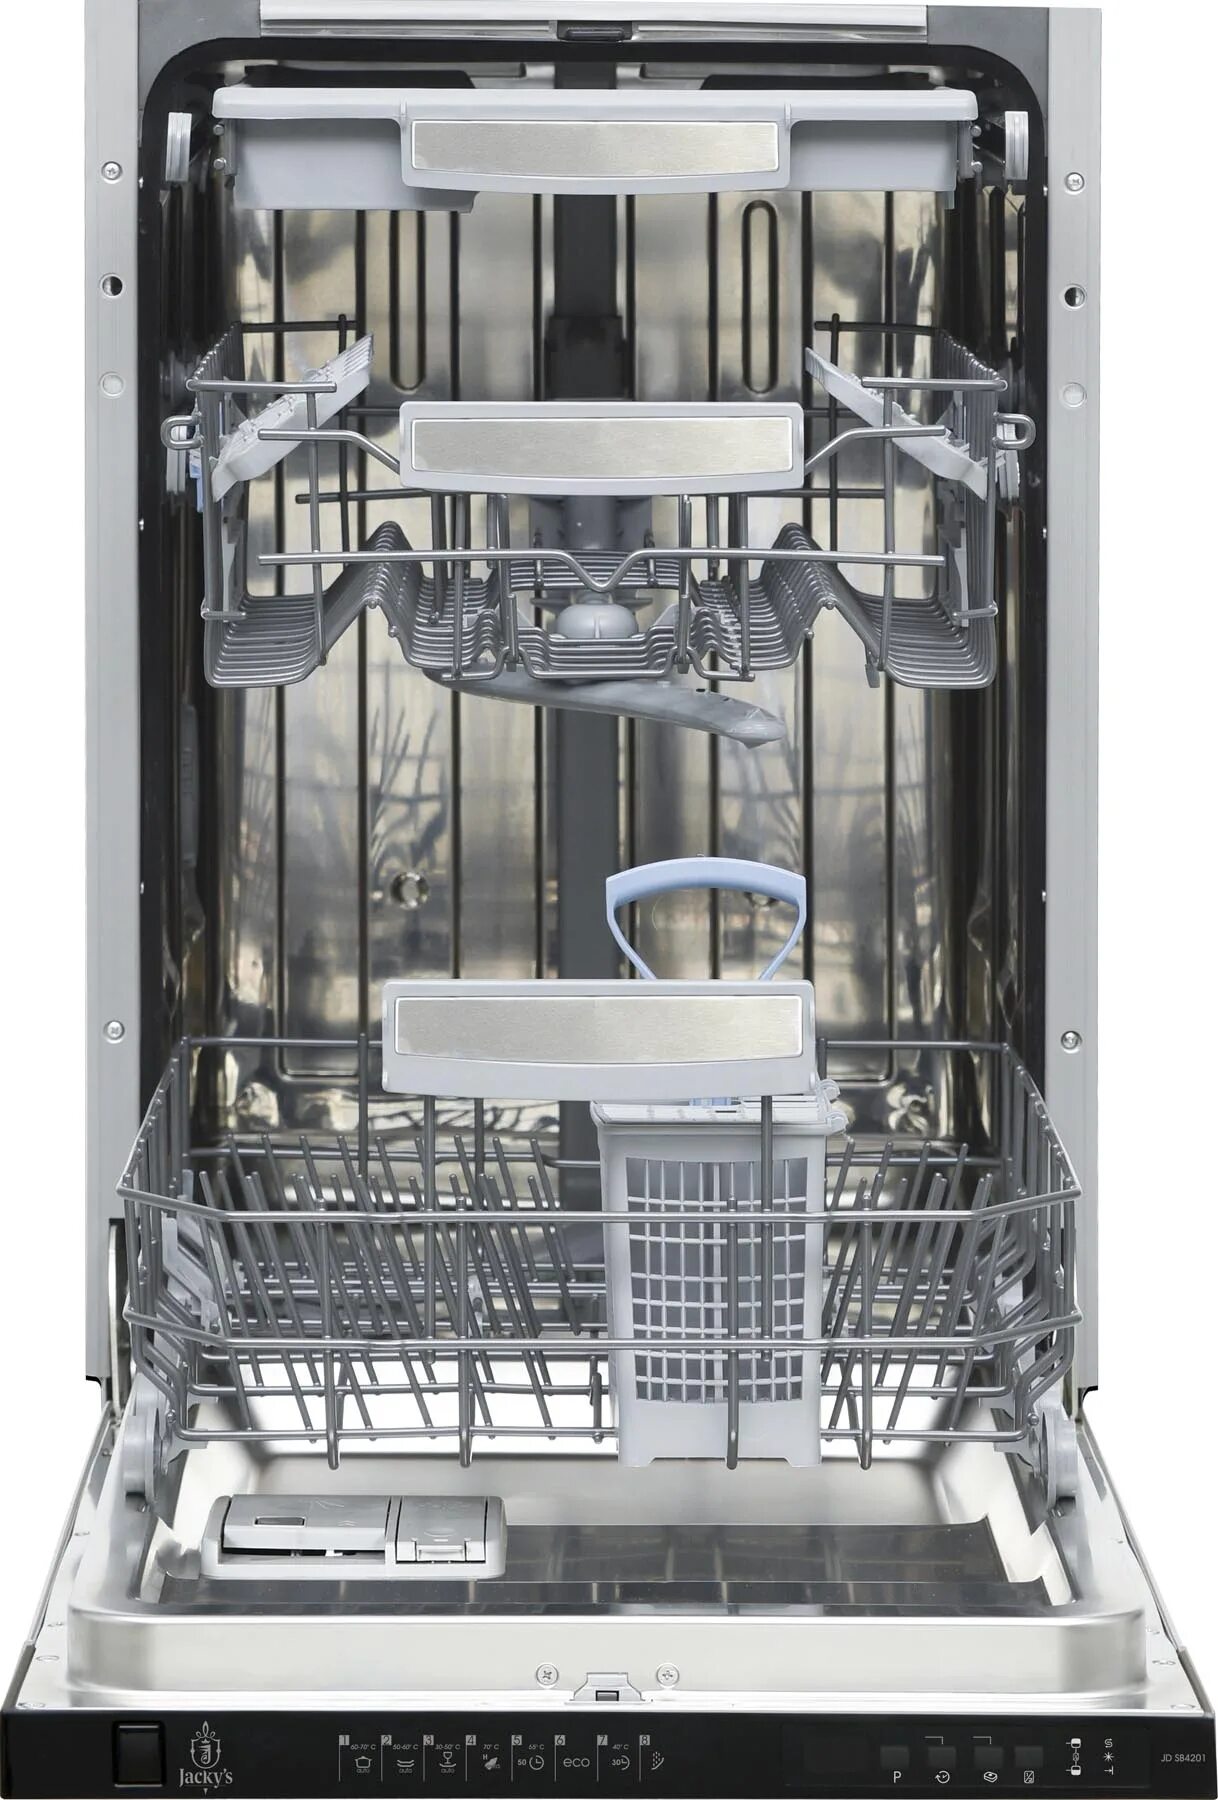 Встраиваемая посудомоечная машина 45 см Schaub Lorenz SLG vi 4410. Посудомоечная машина Jacky's JD sb4201. Встраиваемая посудомоечная машина Delonghi ddw06s Basilia. Korting KDI 45575. Посудомойка 45 см купить в спб